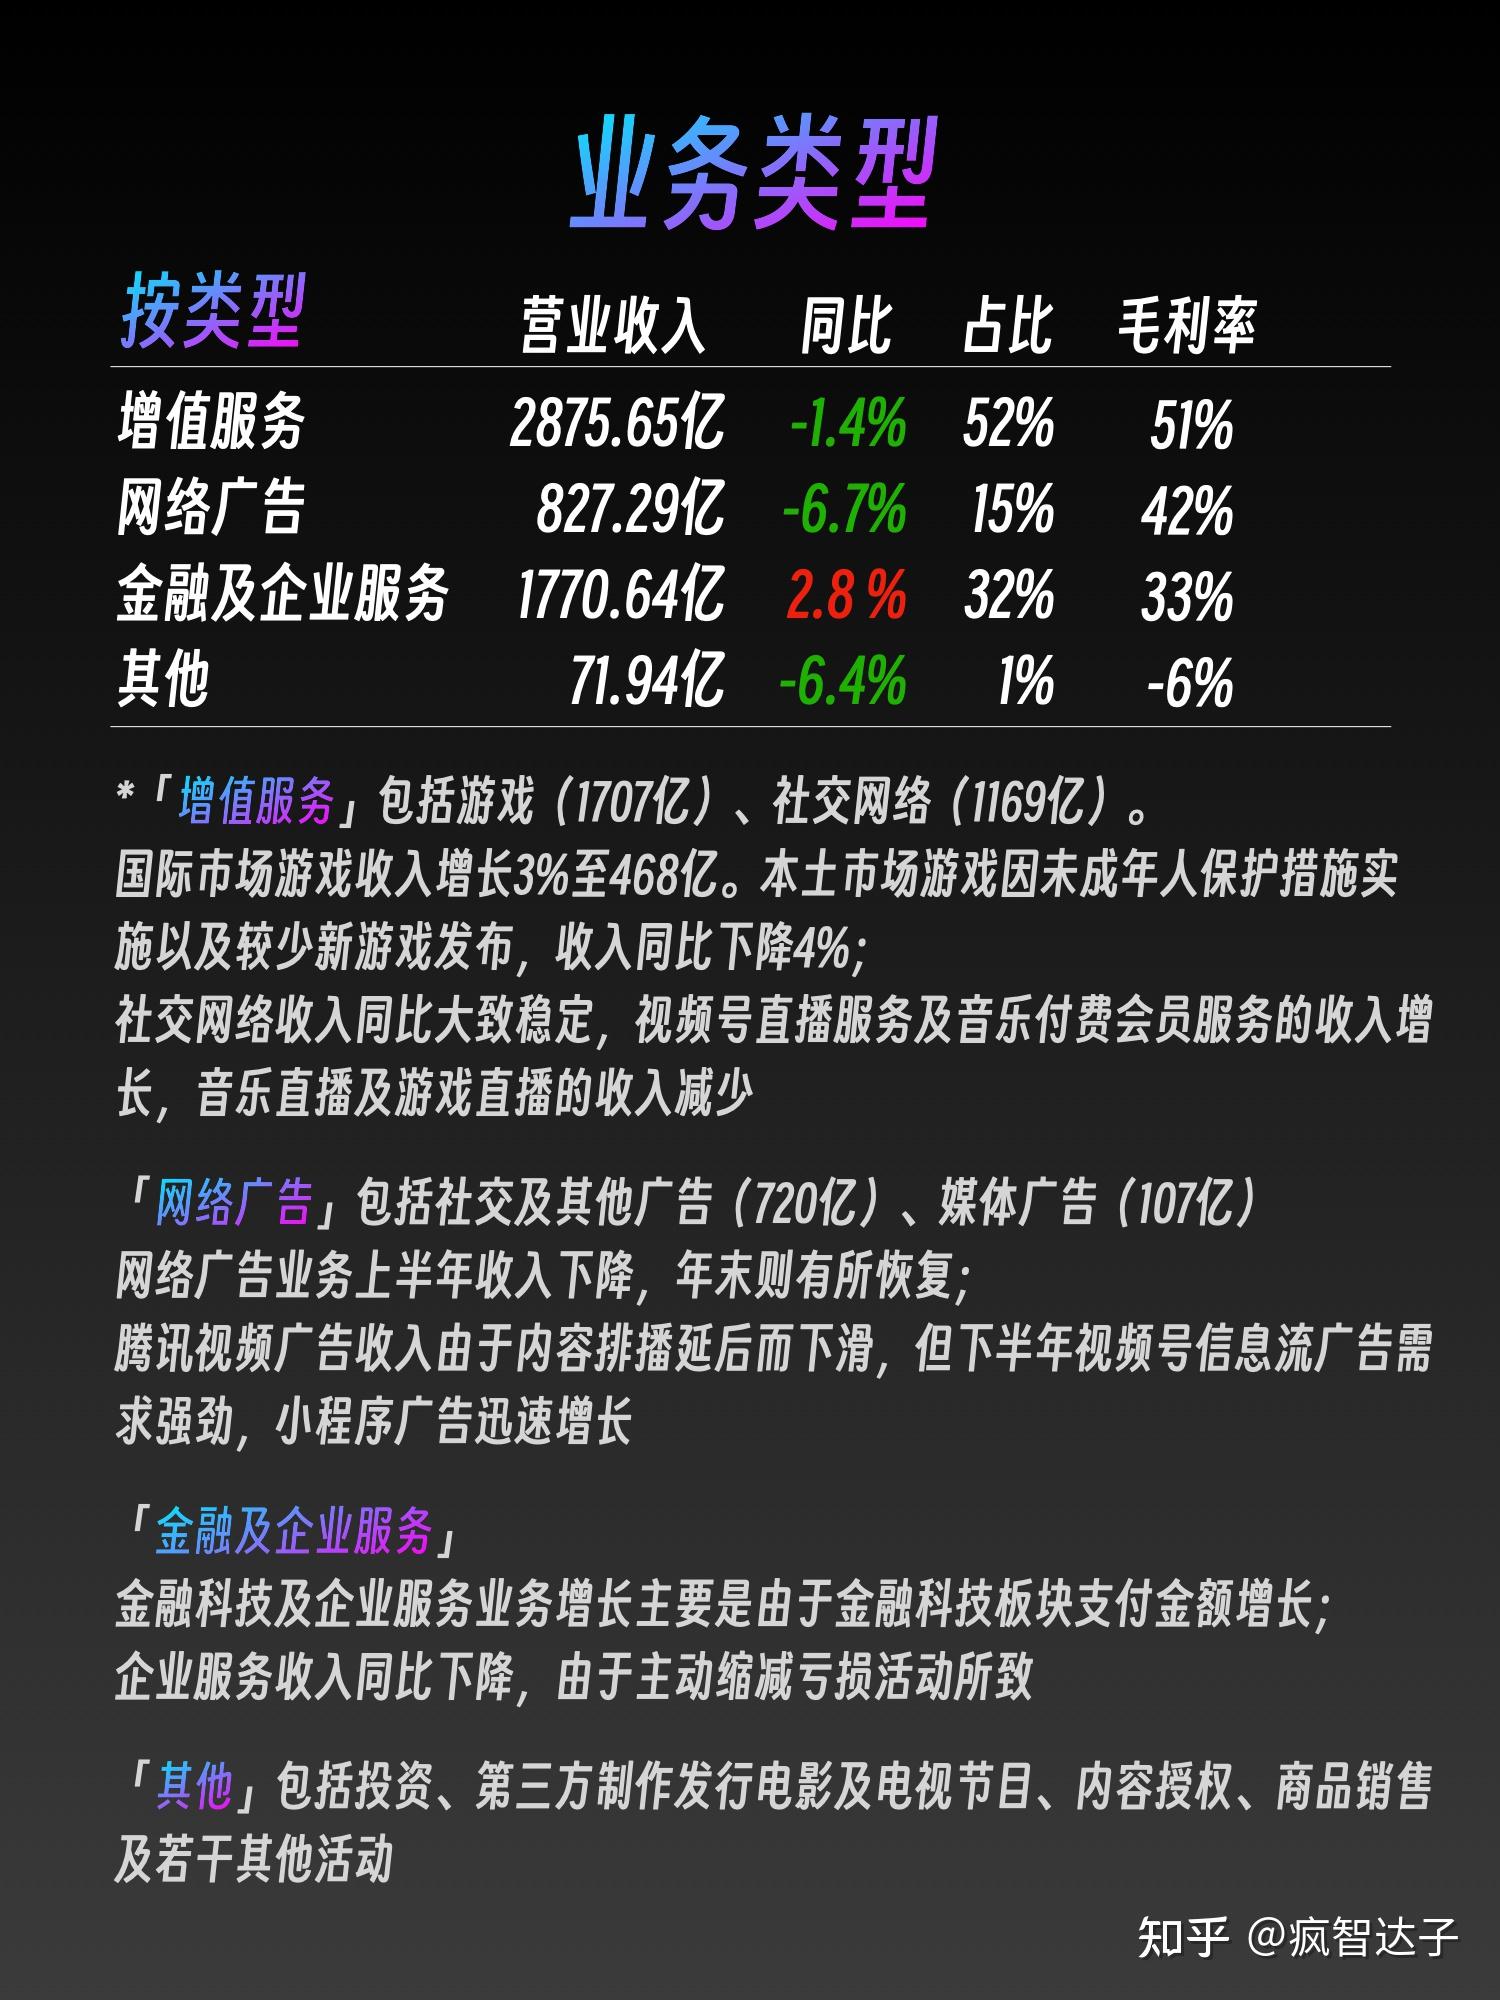 腾讯控股(HK0700) 公司资料